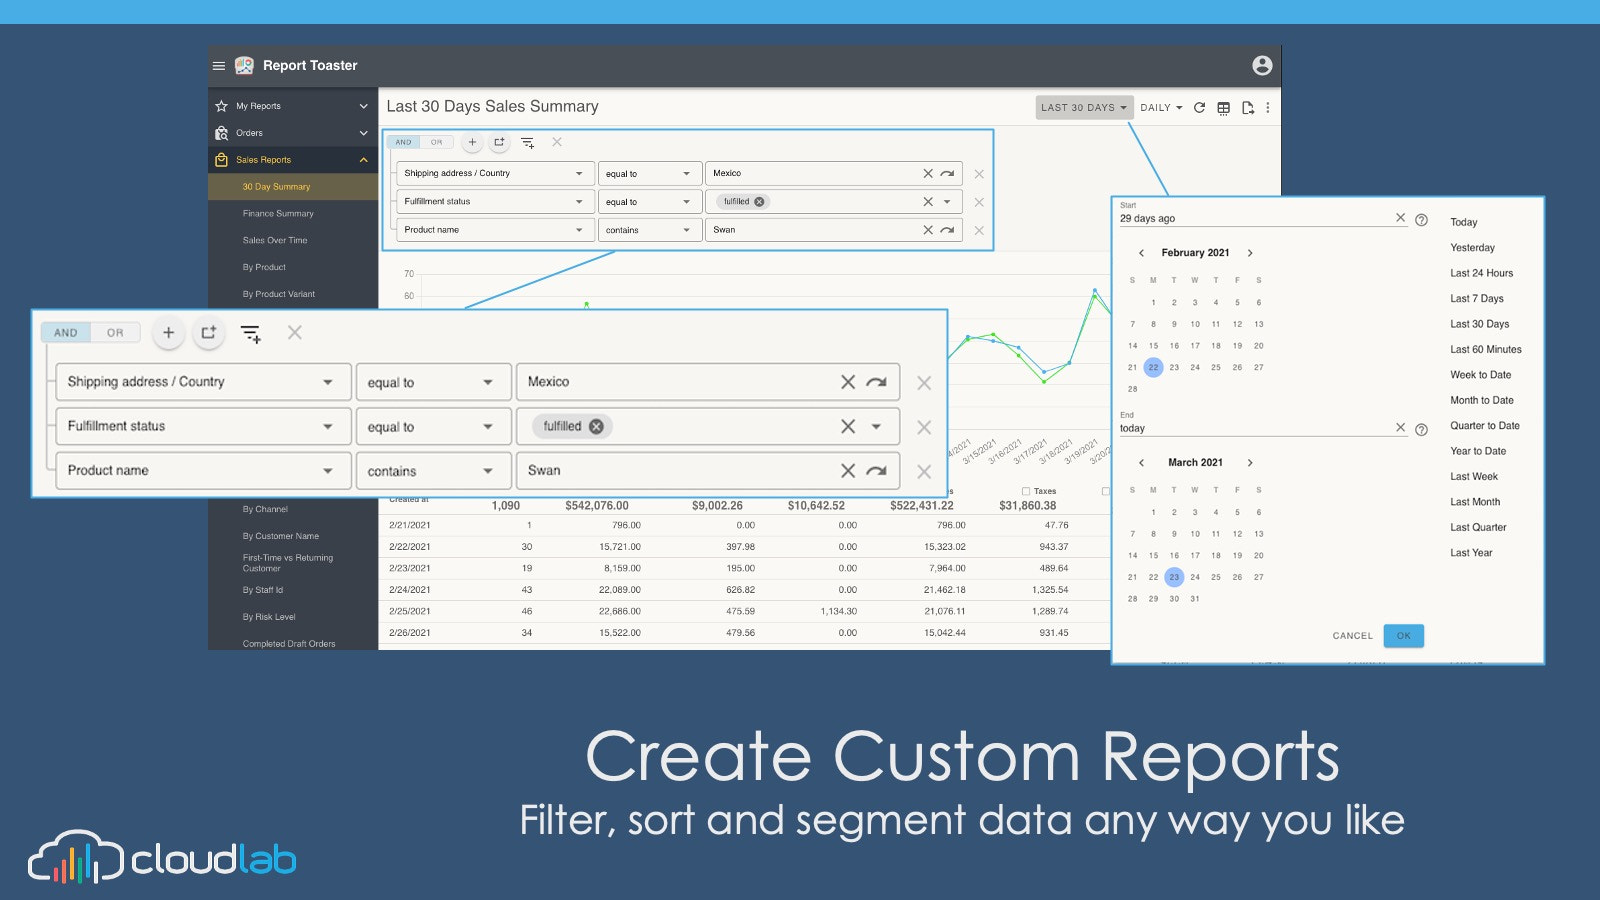 Maak aangepaste rapporten door te filteren, sorteren en segmenteren van gegevens